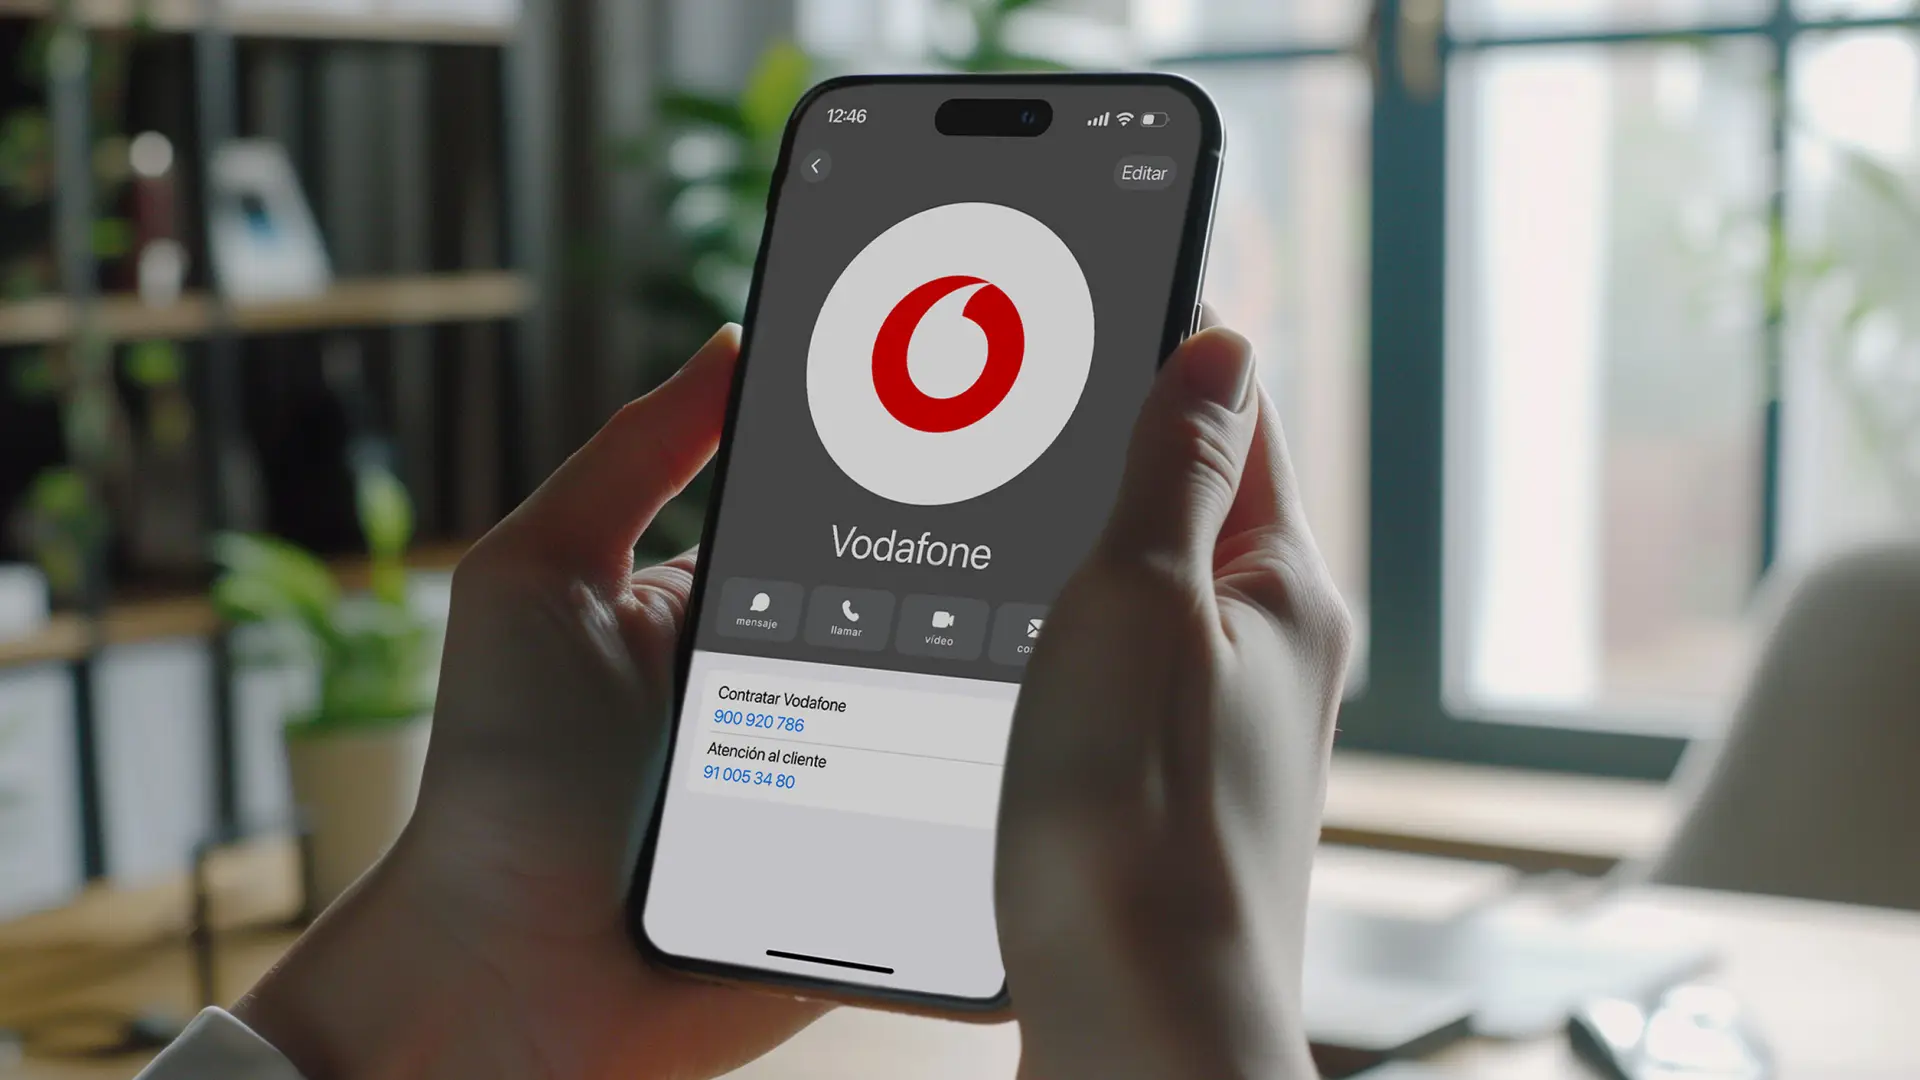 Pantalla de un móvil con el contacto de Vodafone con el número de contratar 900 920 786 y el de atención al cliente 91 005 34 80.